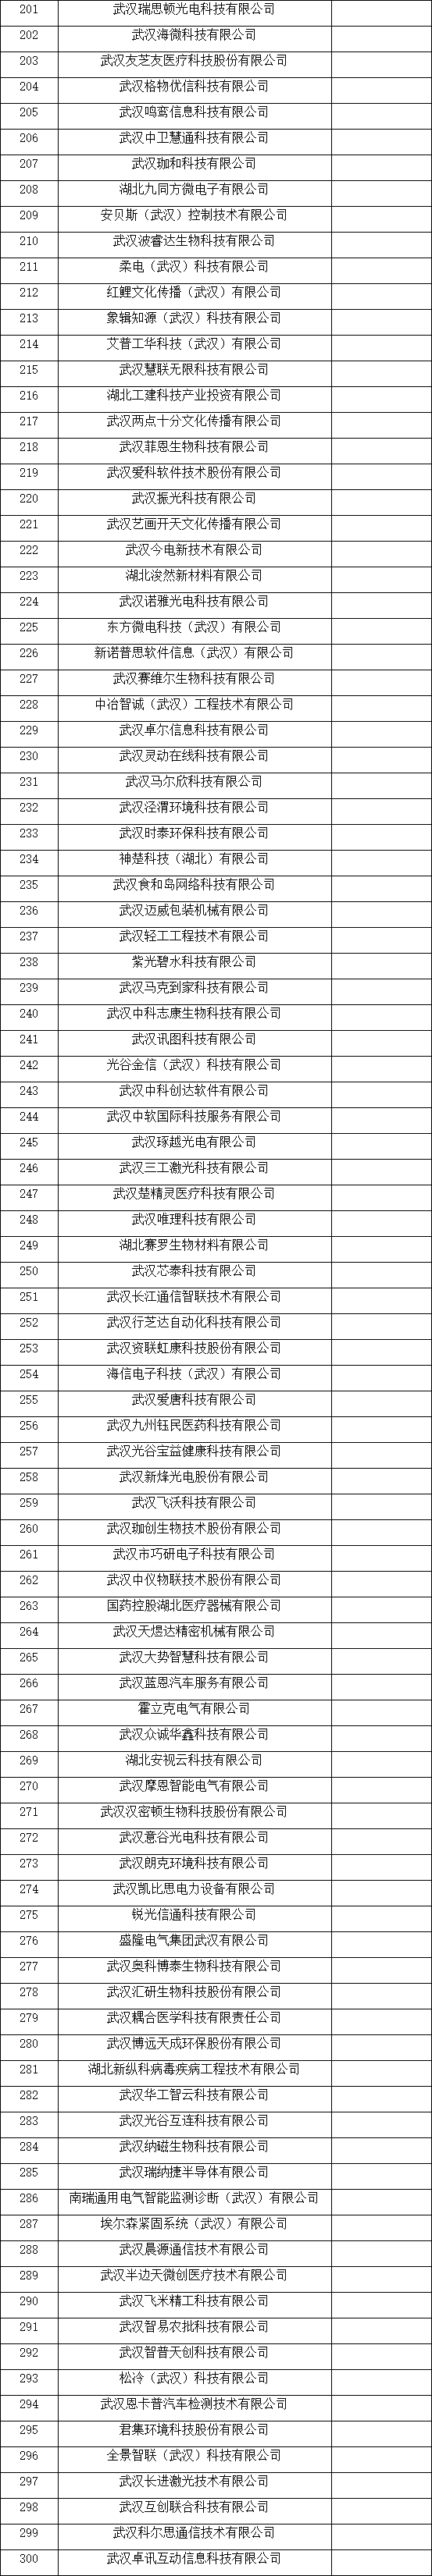 武汉市瞪羚企业名单